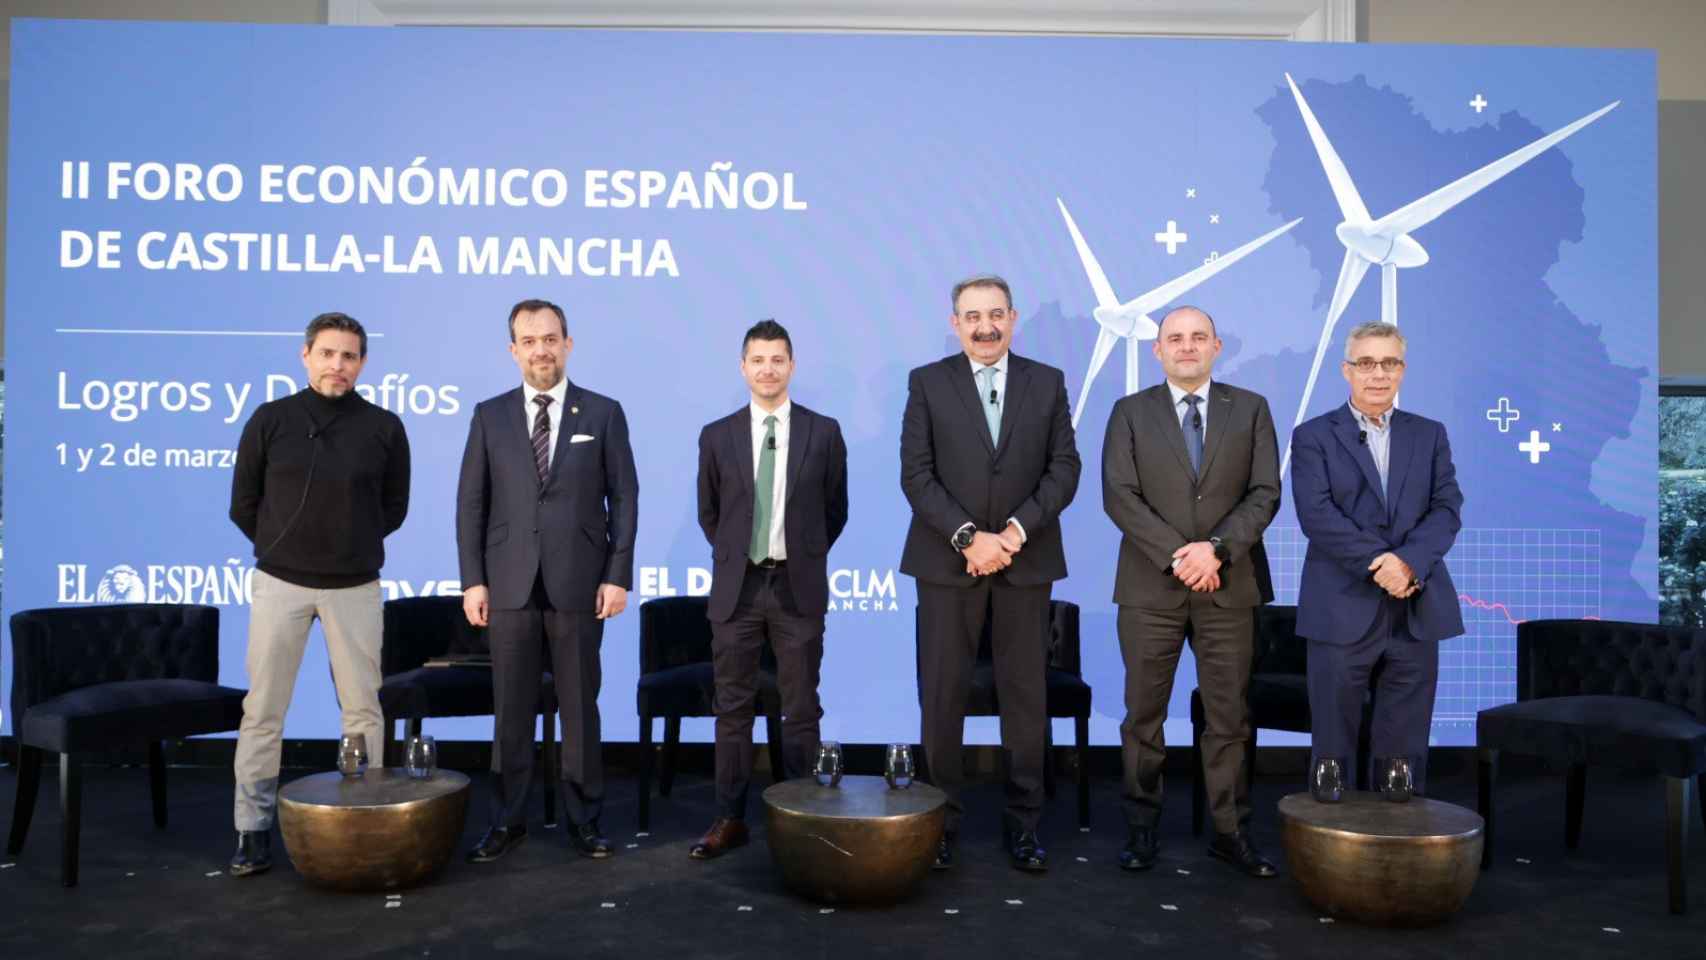 Raúl Calvo, Francisco Izquierdo, Alberto Morlanes, Jesús Fernández, Alino Martínez y Ángel Blanco.